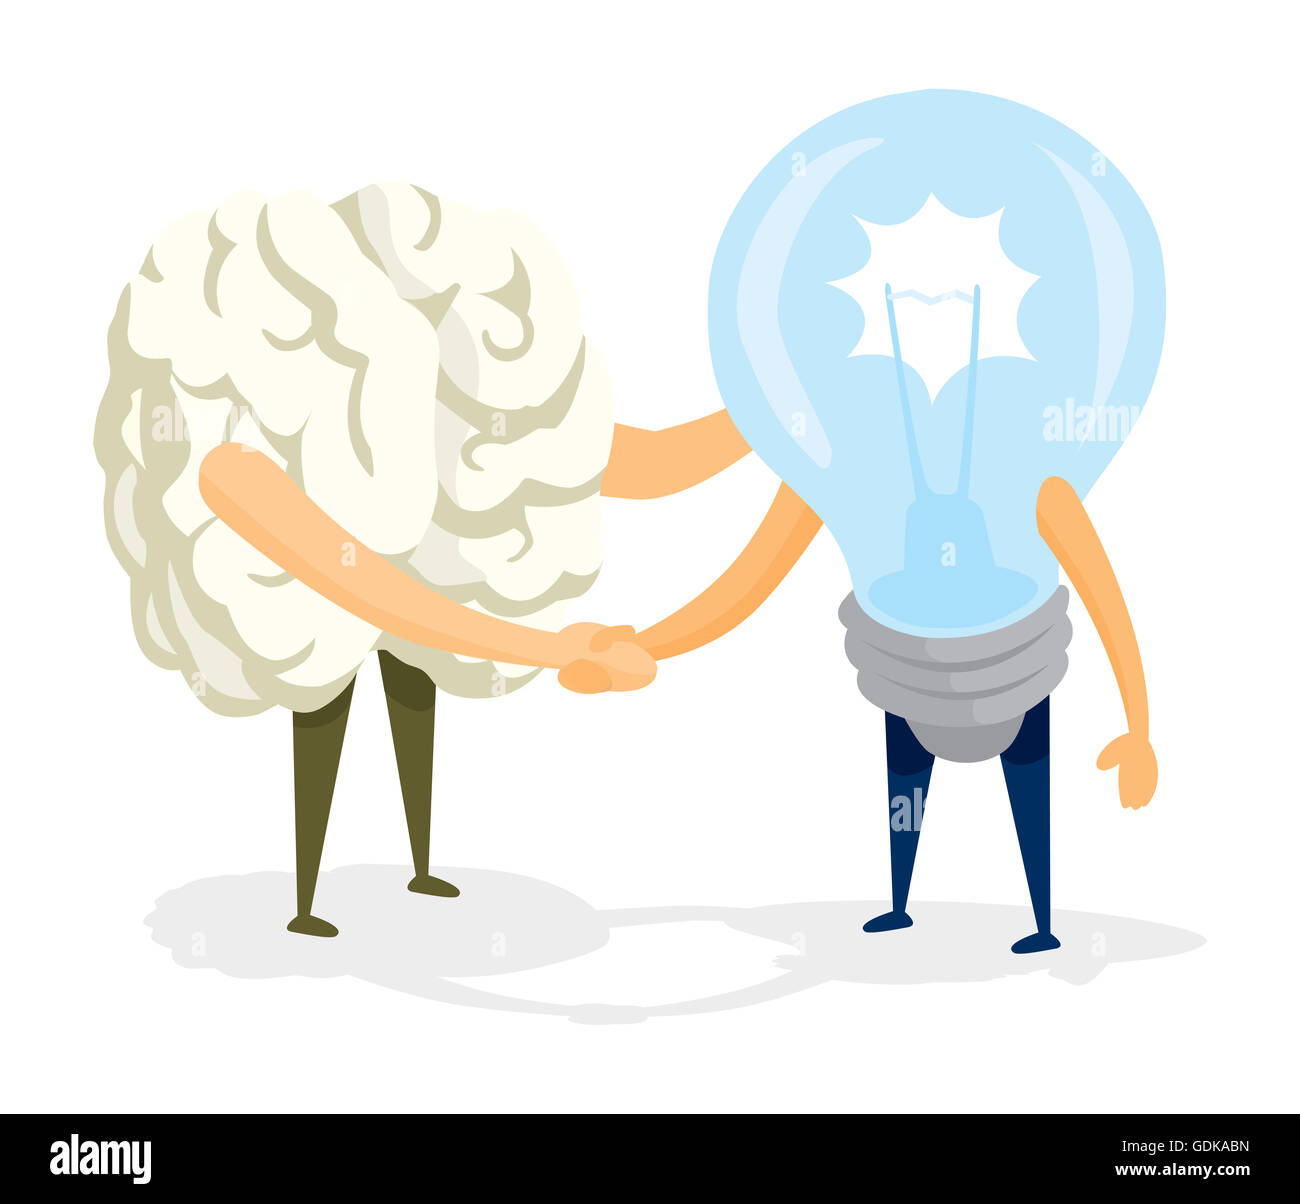 Cartoon illustration de poignée de main amicale entre le cerveau et l'idée Banque D'Images